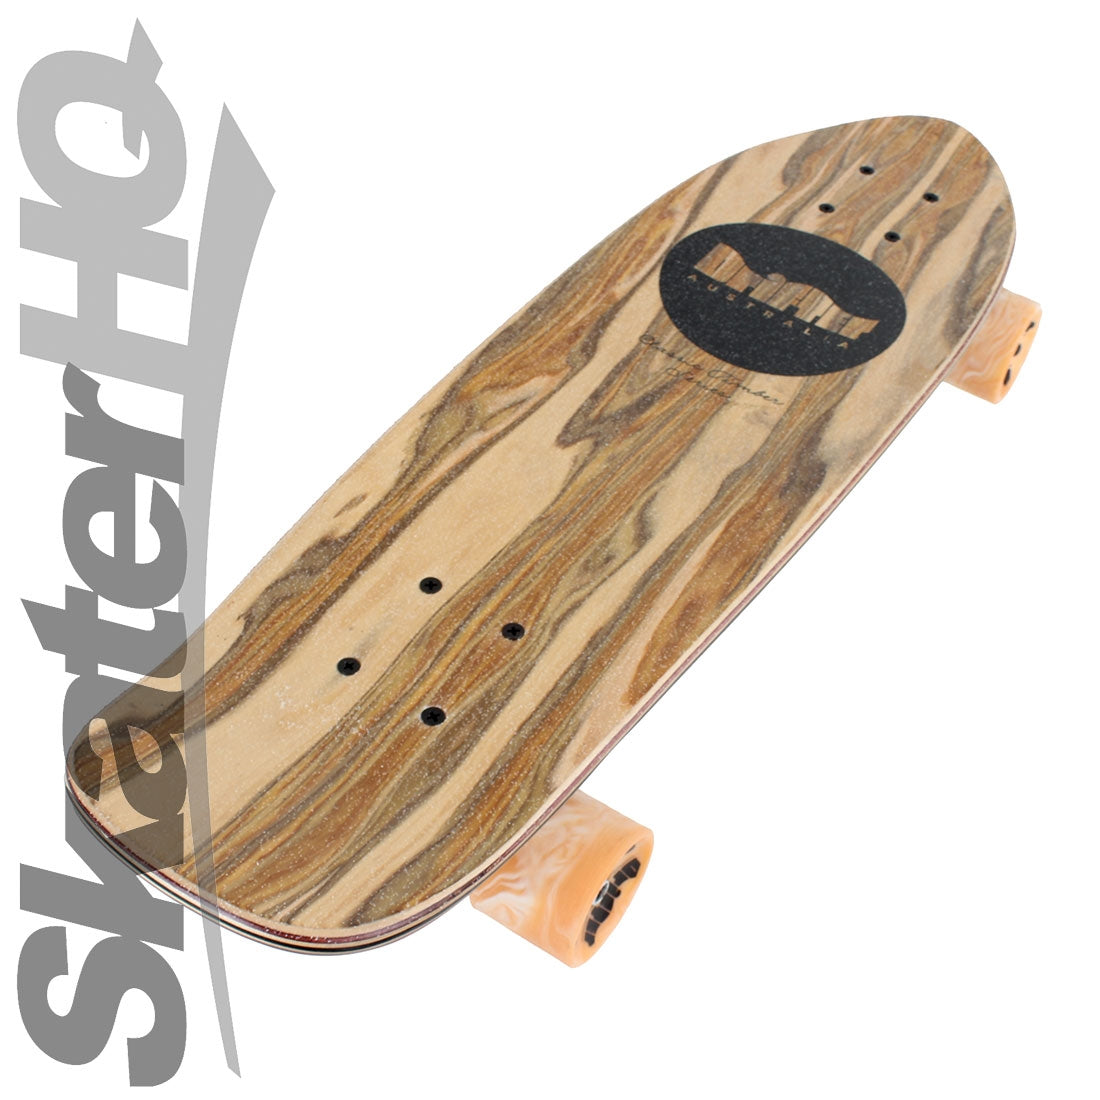 Drifter Pug 7.5x26.5 Complete - Timber Skateboard Compl Cruisers